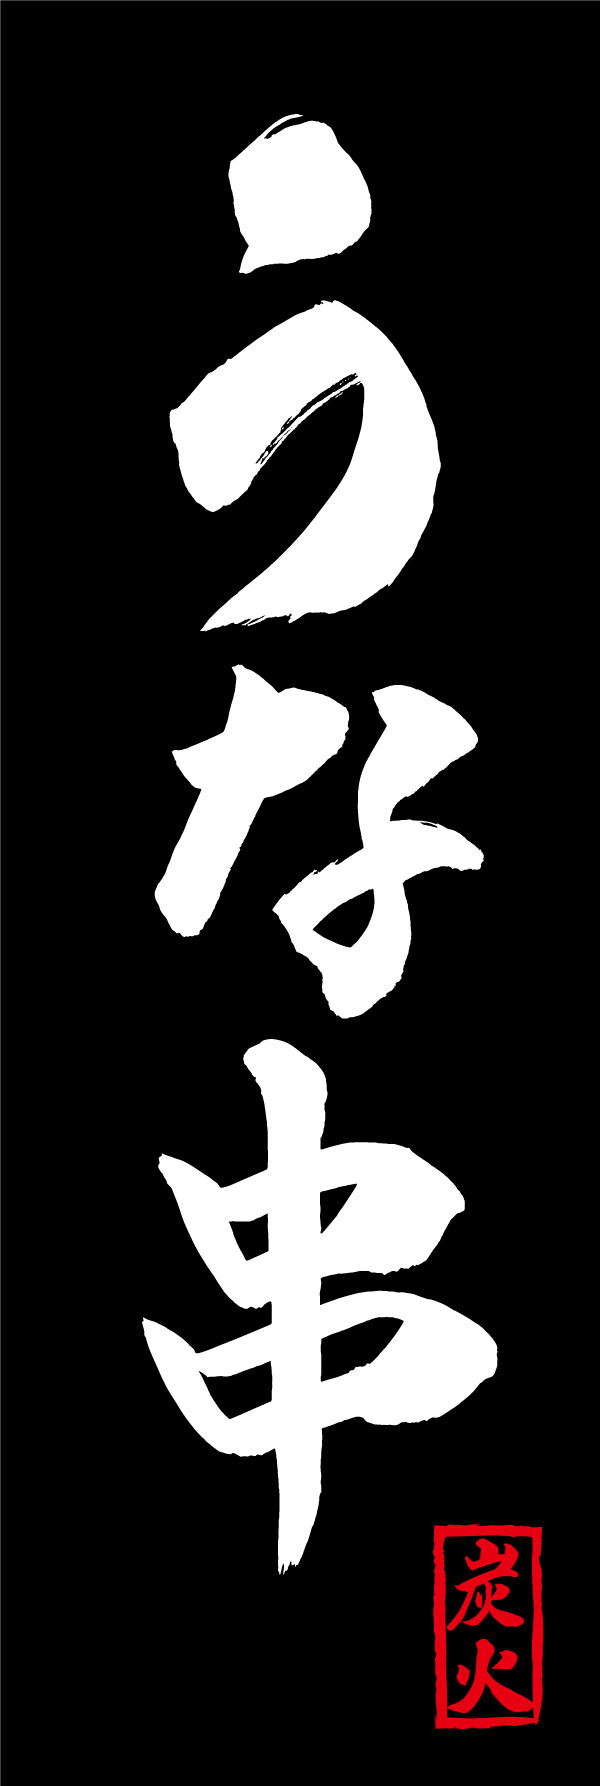 うな串 156_03 「うな串」ののぼりです。江戸文字職人 加藤木大介氏による、手書きの筆文字です。完全書き下ろし、唯一無二ののぼりは当店だけのオリジナル商品です。（Y.M）